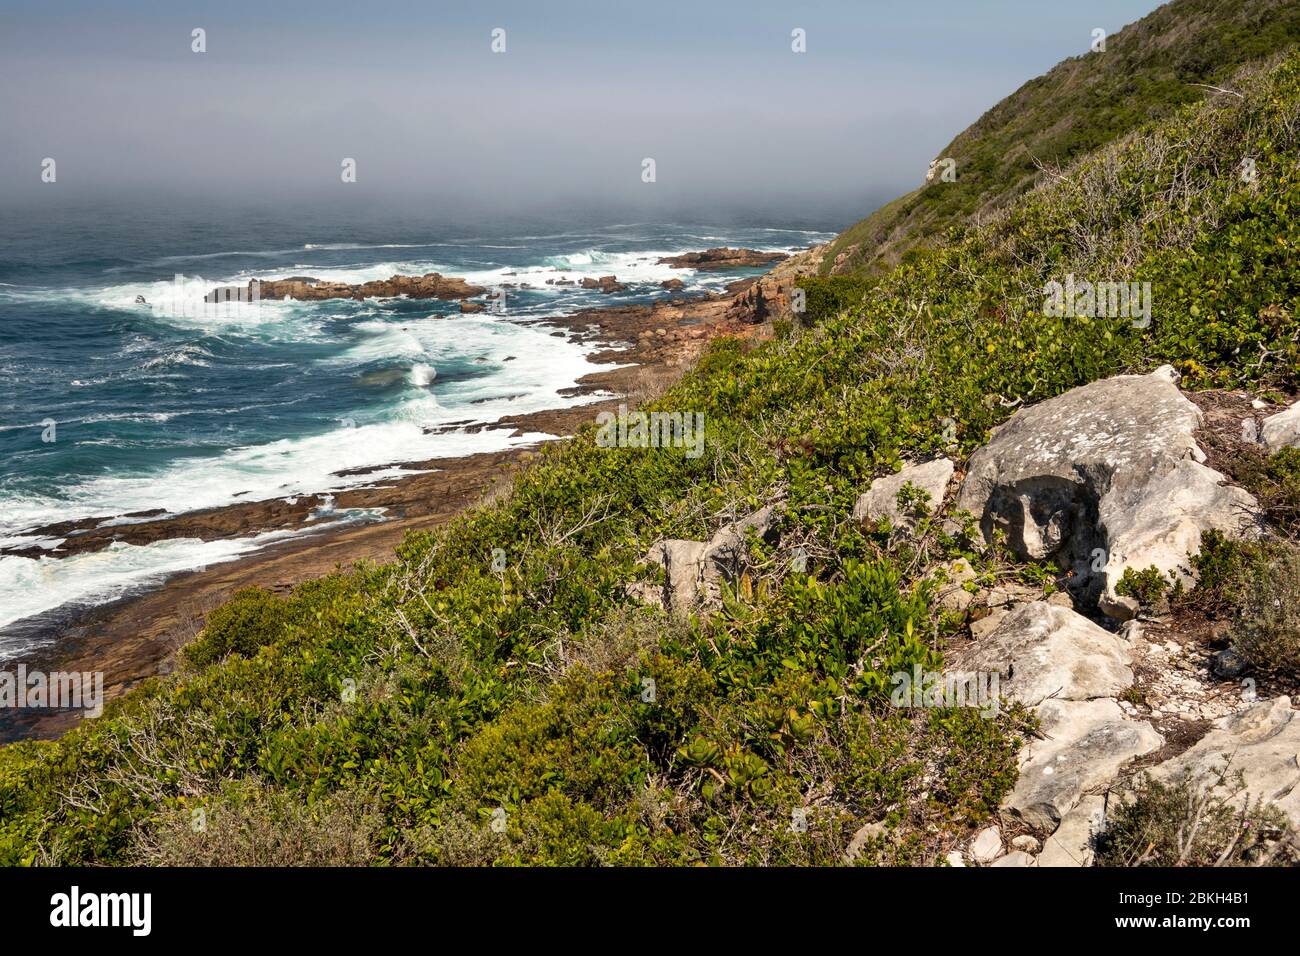 Afrique du Sud, Cap occidental, baie de Plettenberg, réserve naturelle de Robberg, littoral rocheux à côté du sentier de randonnée Banque D'Images